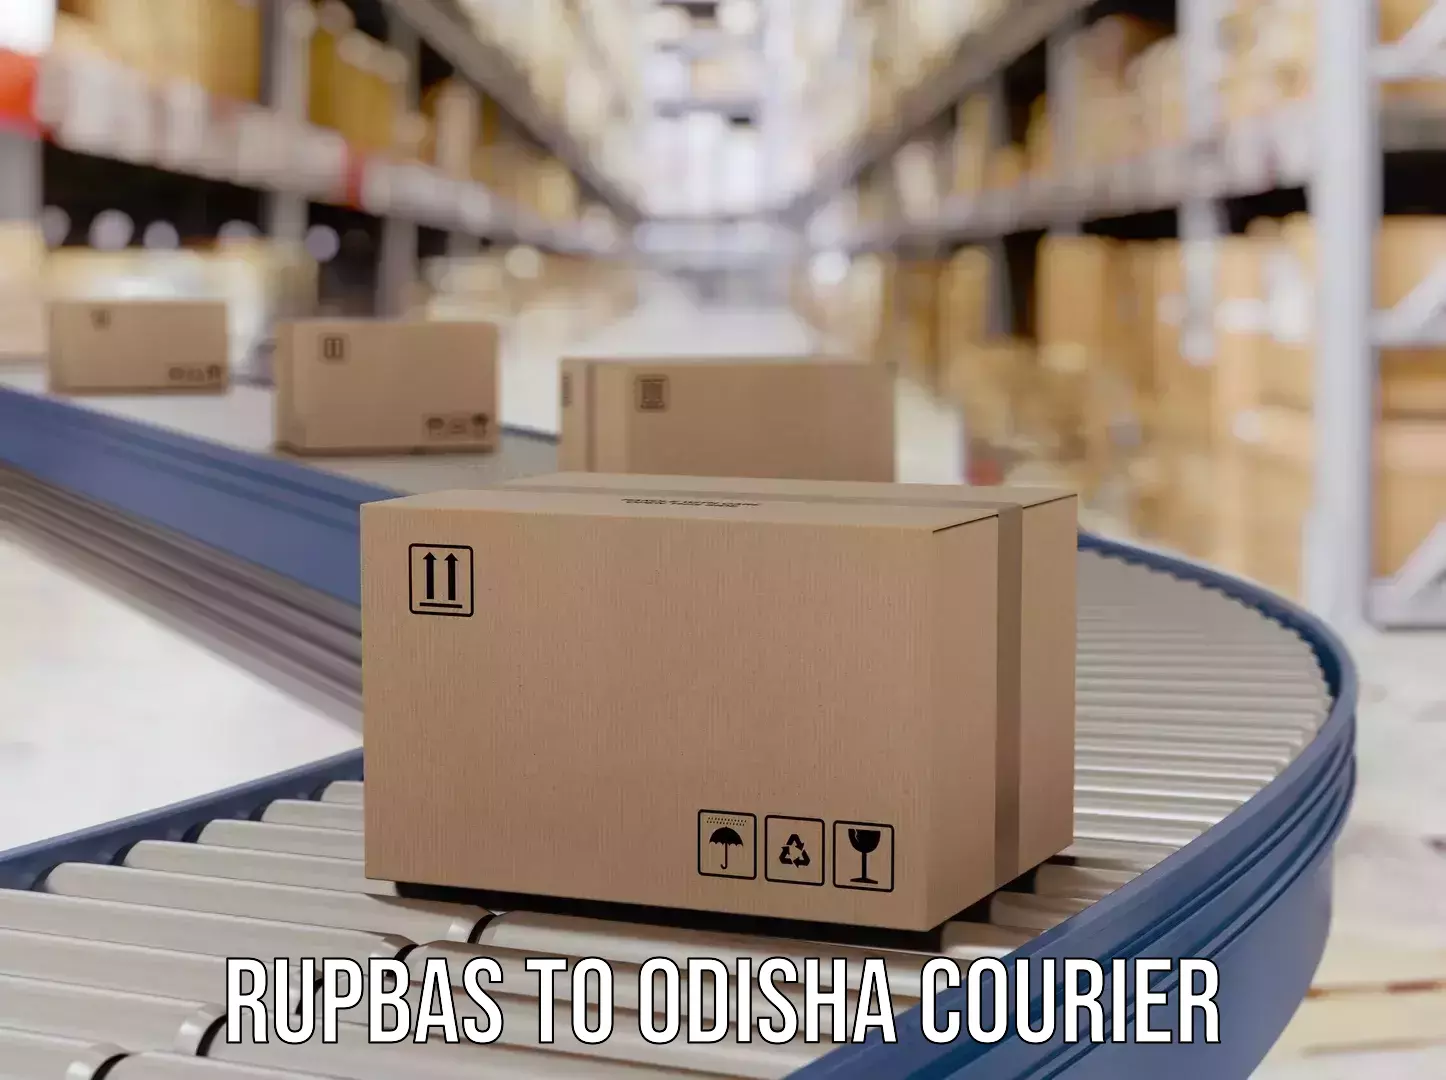 Courier service booking Rupbas to Kesinga